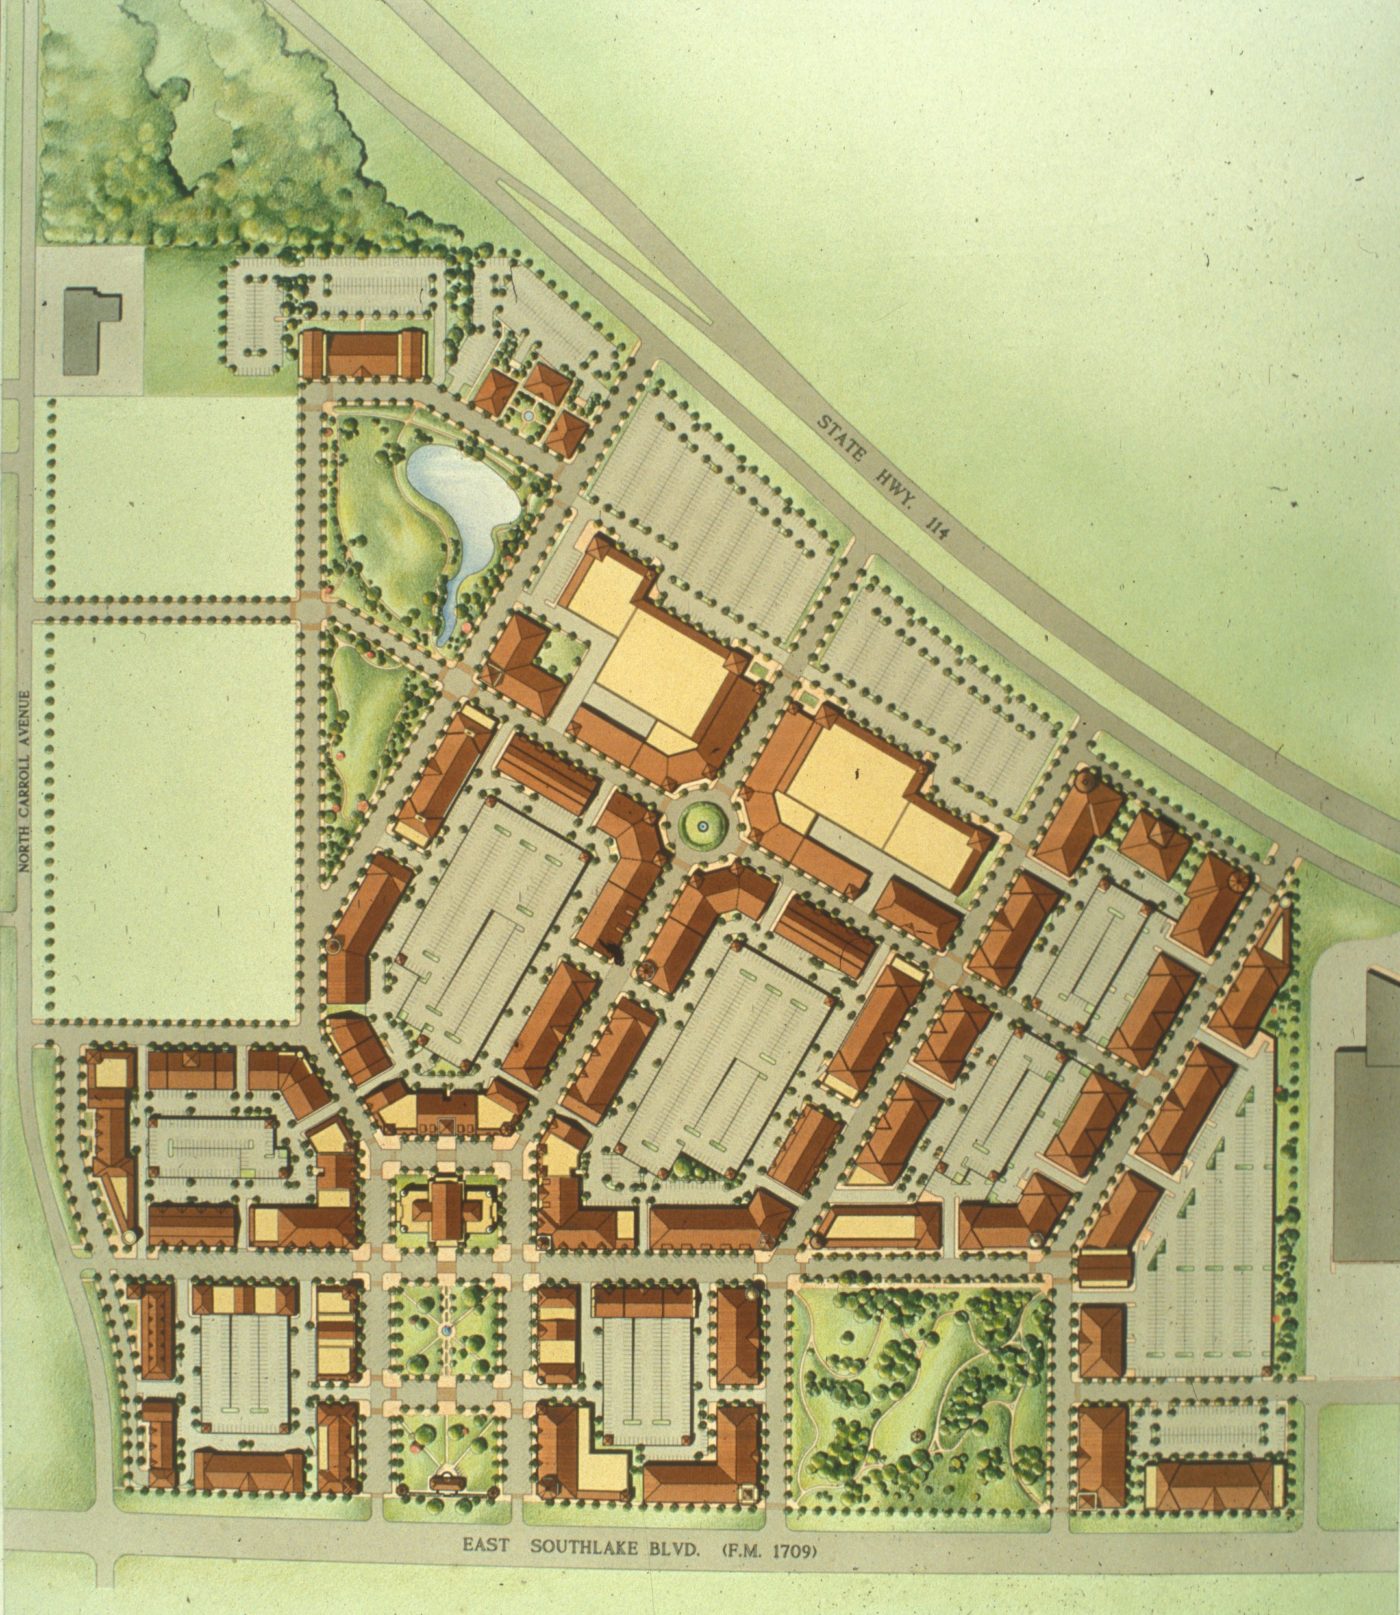 Original Southlake Town Square Master Plan